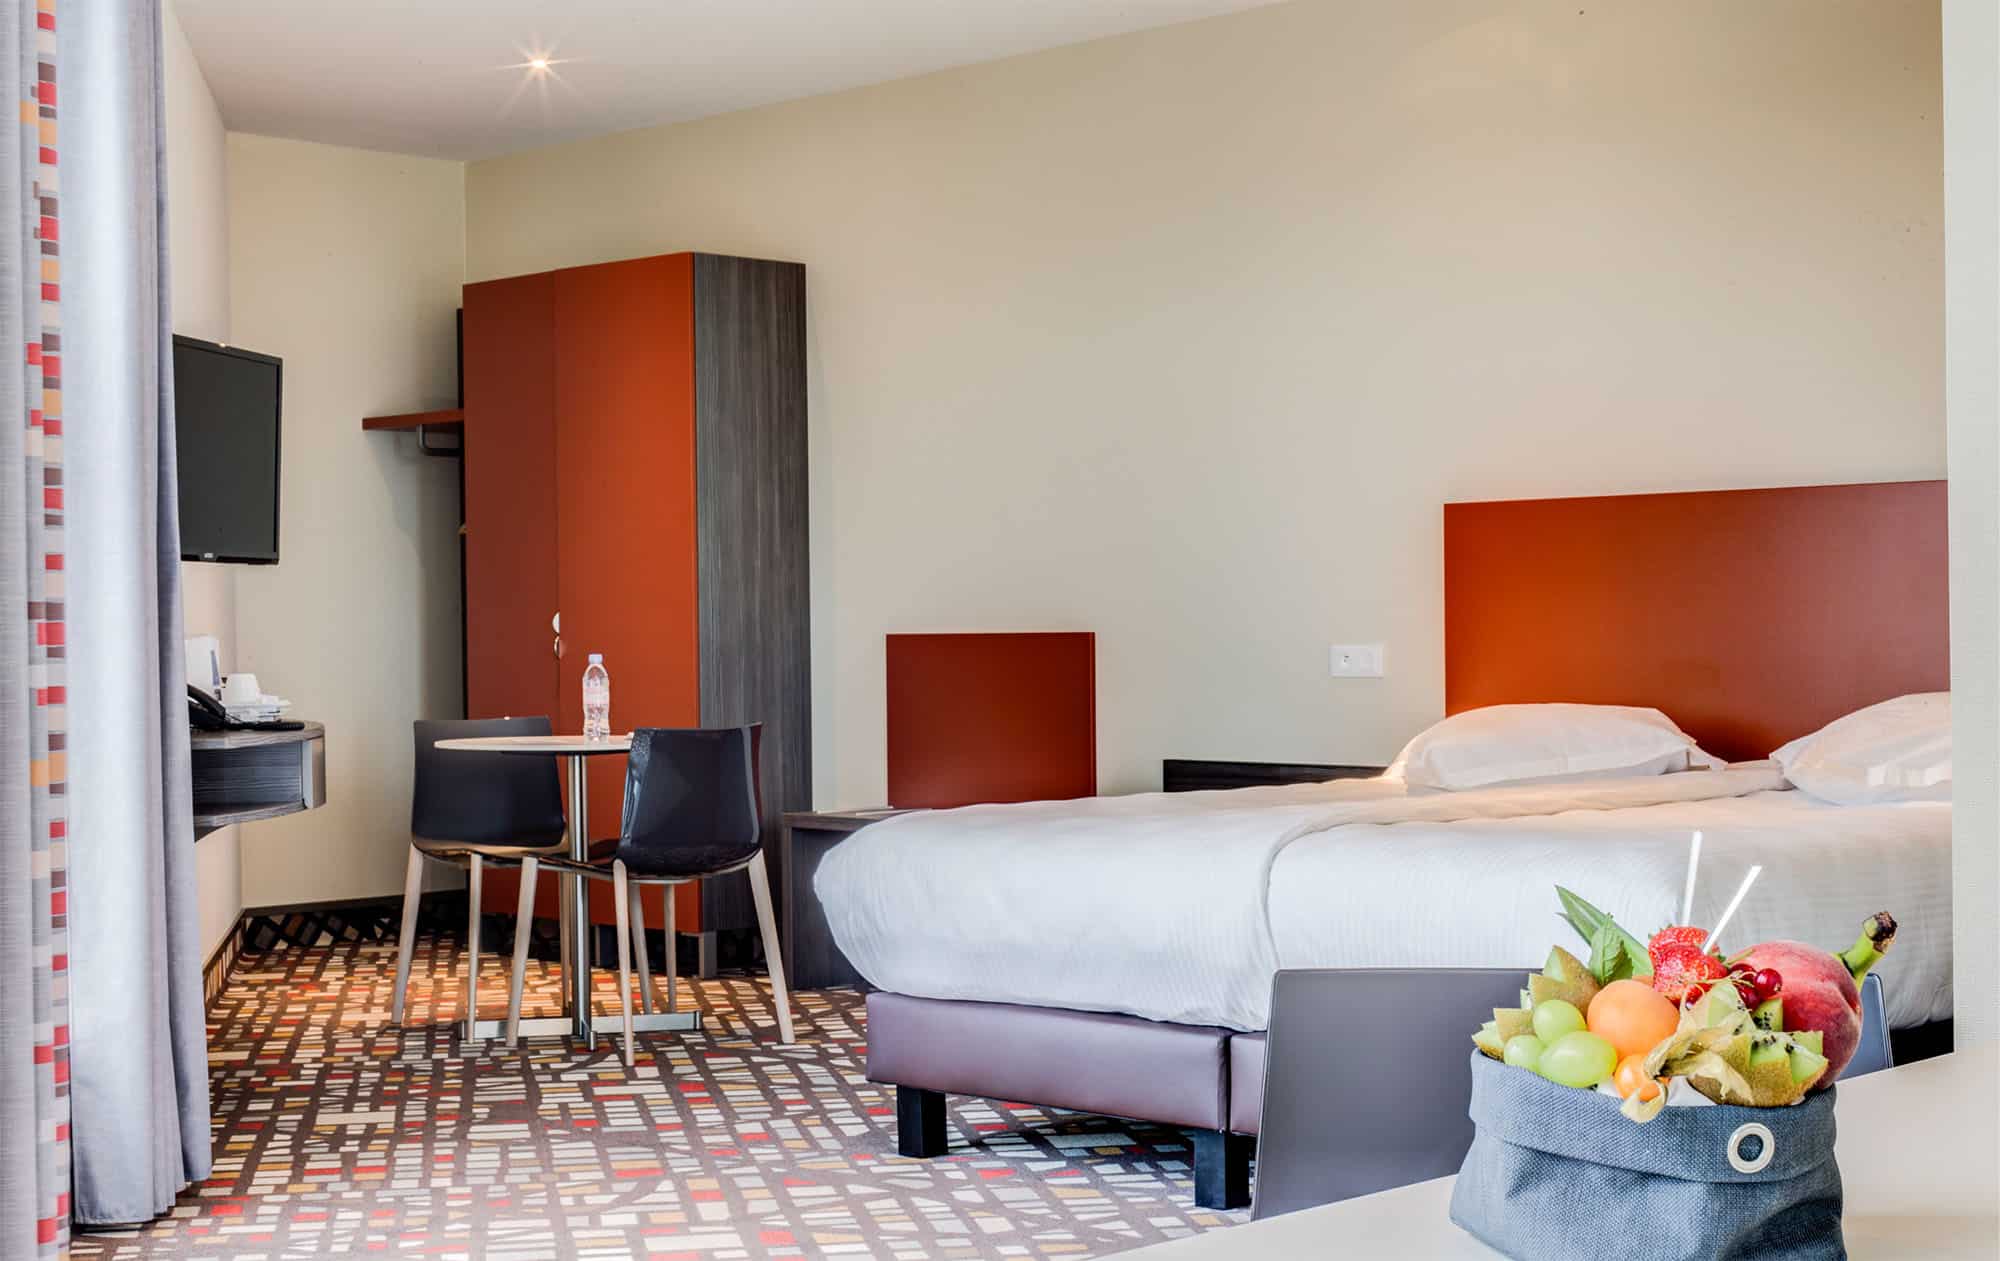 L'Hôtel ParKest 3 étoiles propose de belles prestations alliant modernité et confort à Lyon